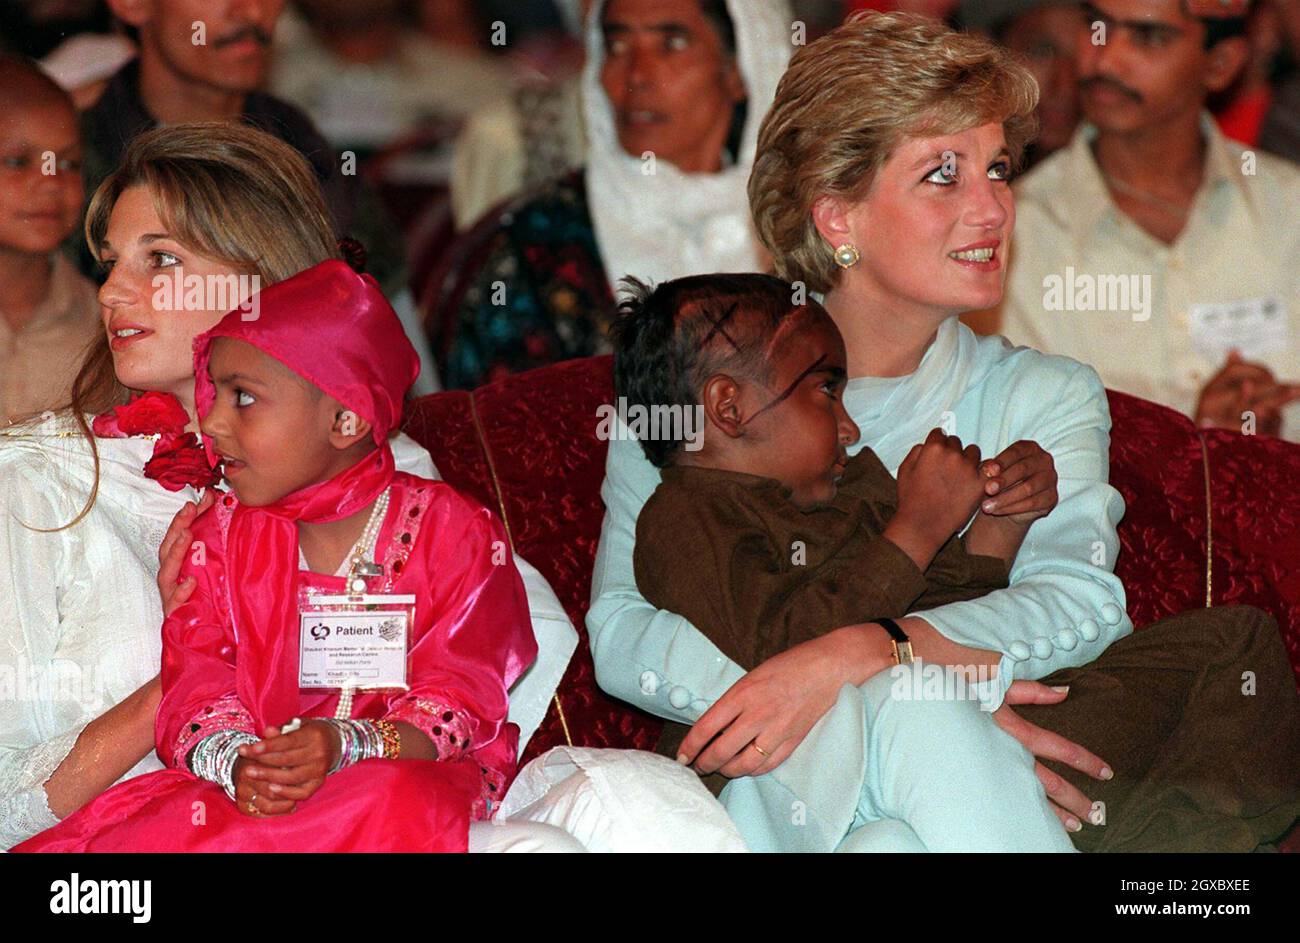 Diana, Princesa de Gales y Jemima Khan crían a niños enfermos en sus brazos  durante una visita al hospital oncológico de Imran Khan en Lahore,  Pakistán, en abril de 1996. Anwar Hussein/EMPICS